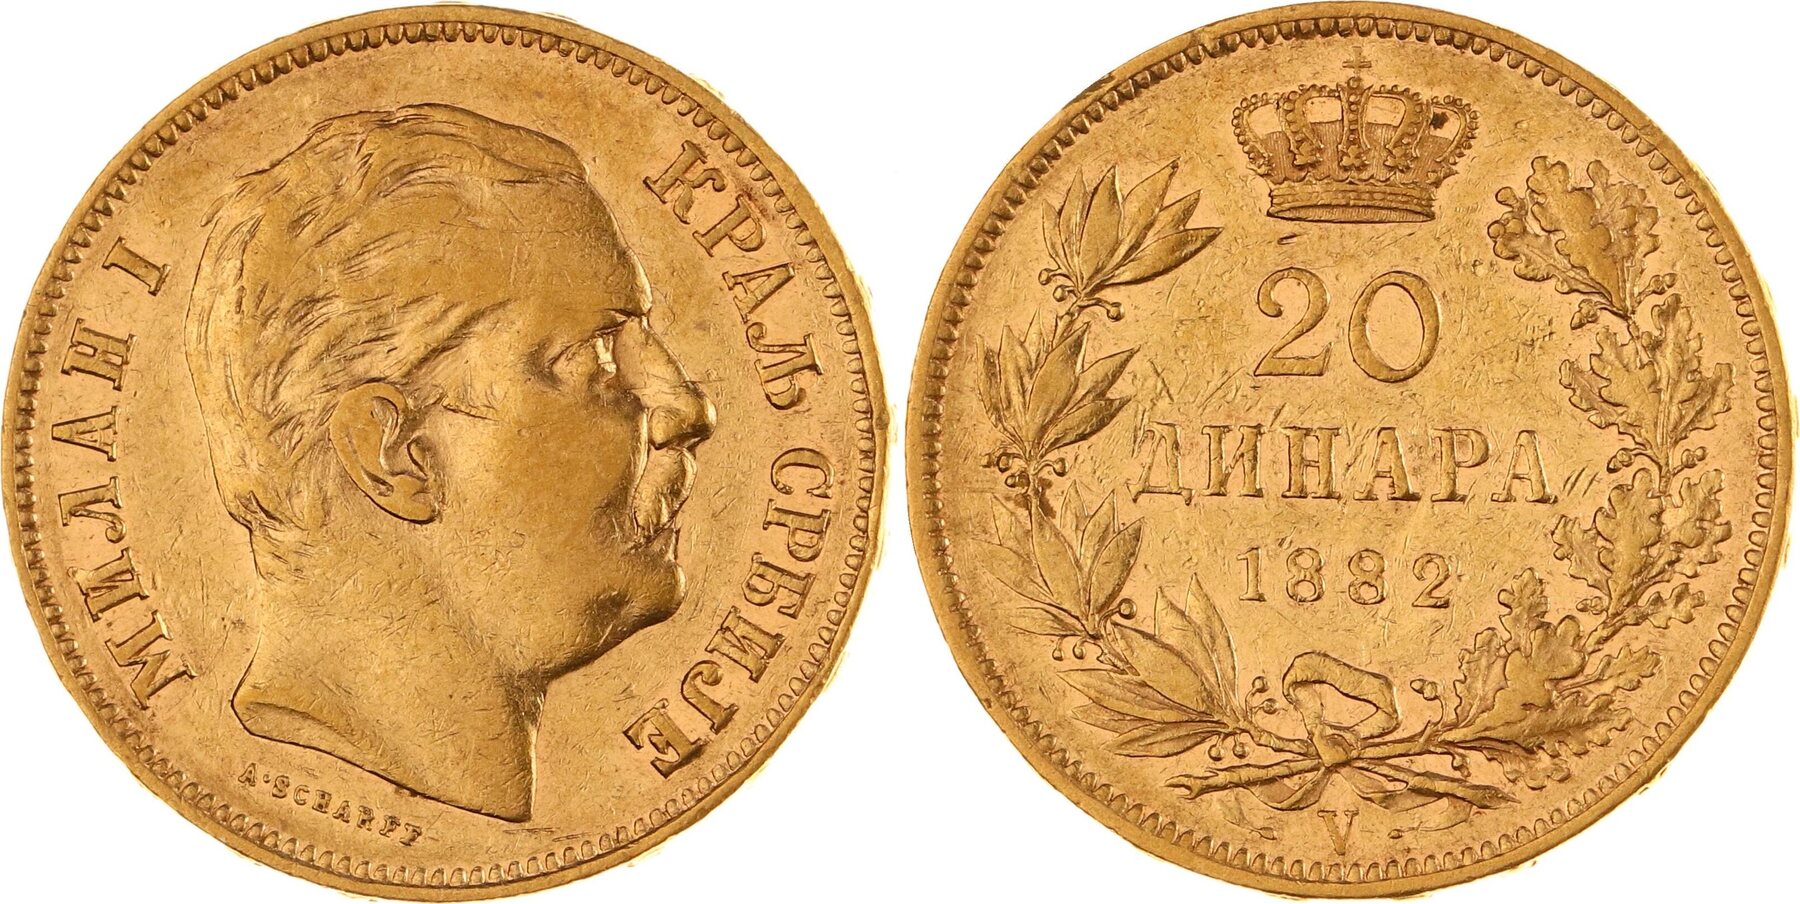 Jugoslawien-Serbien 20 Dinara Gold 1882 V Milan Obrenovich IV. (Milan I